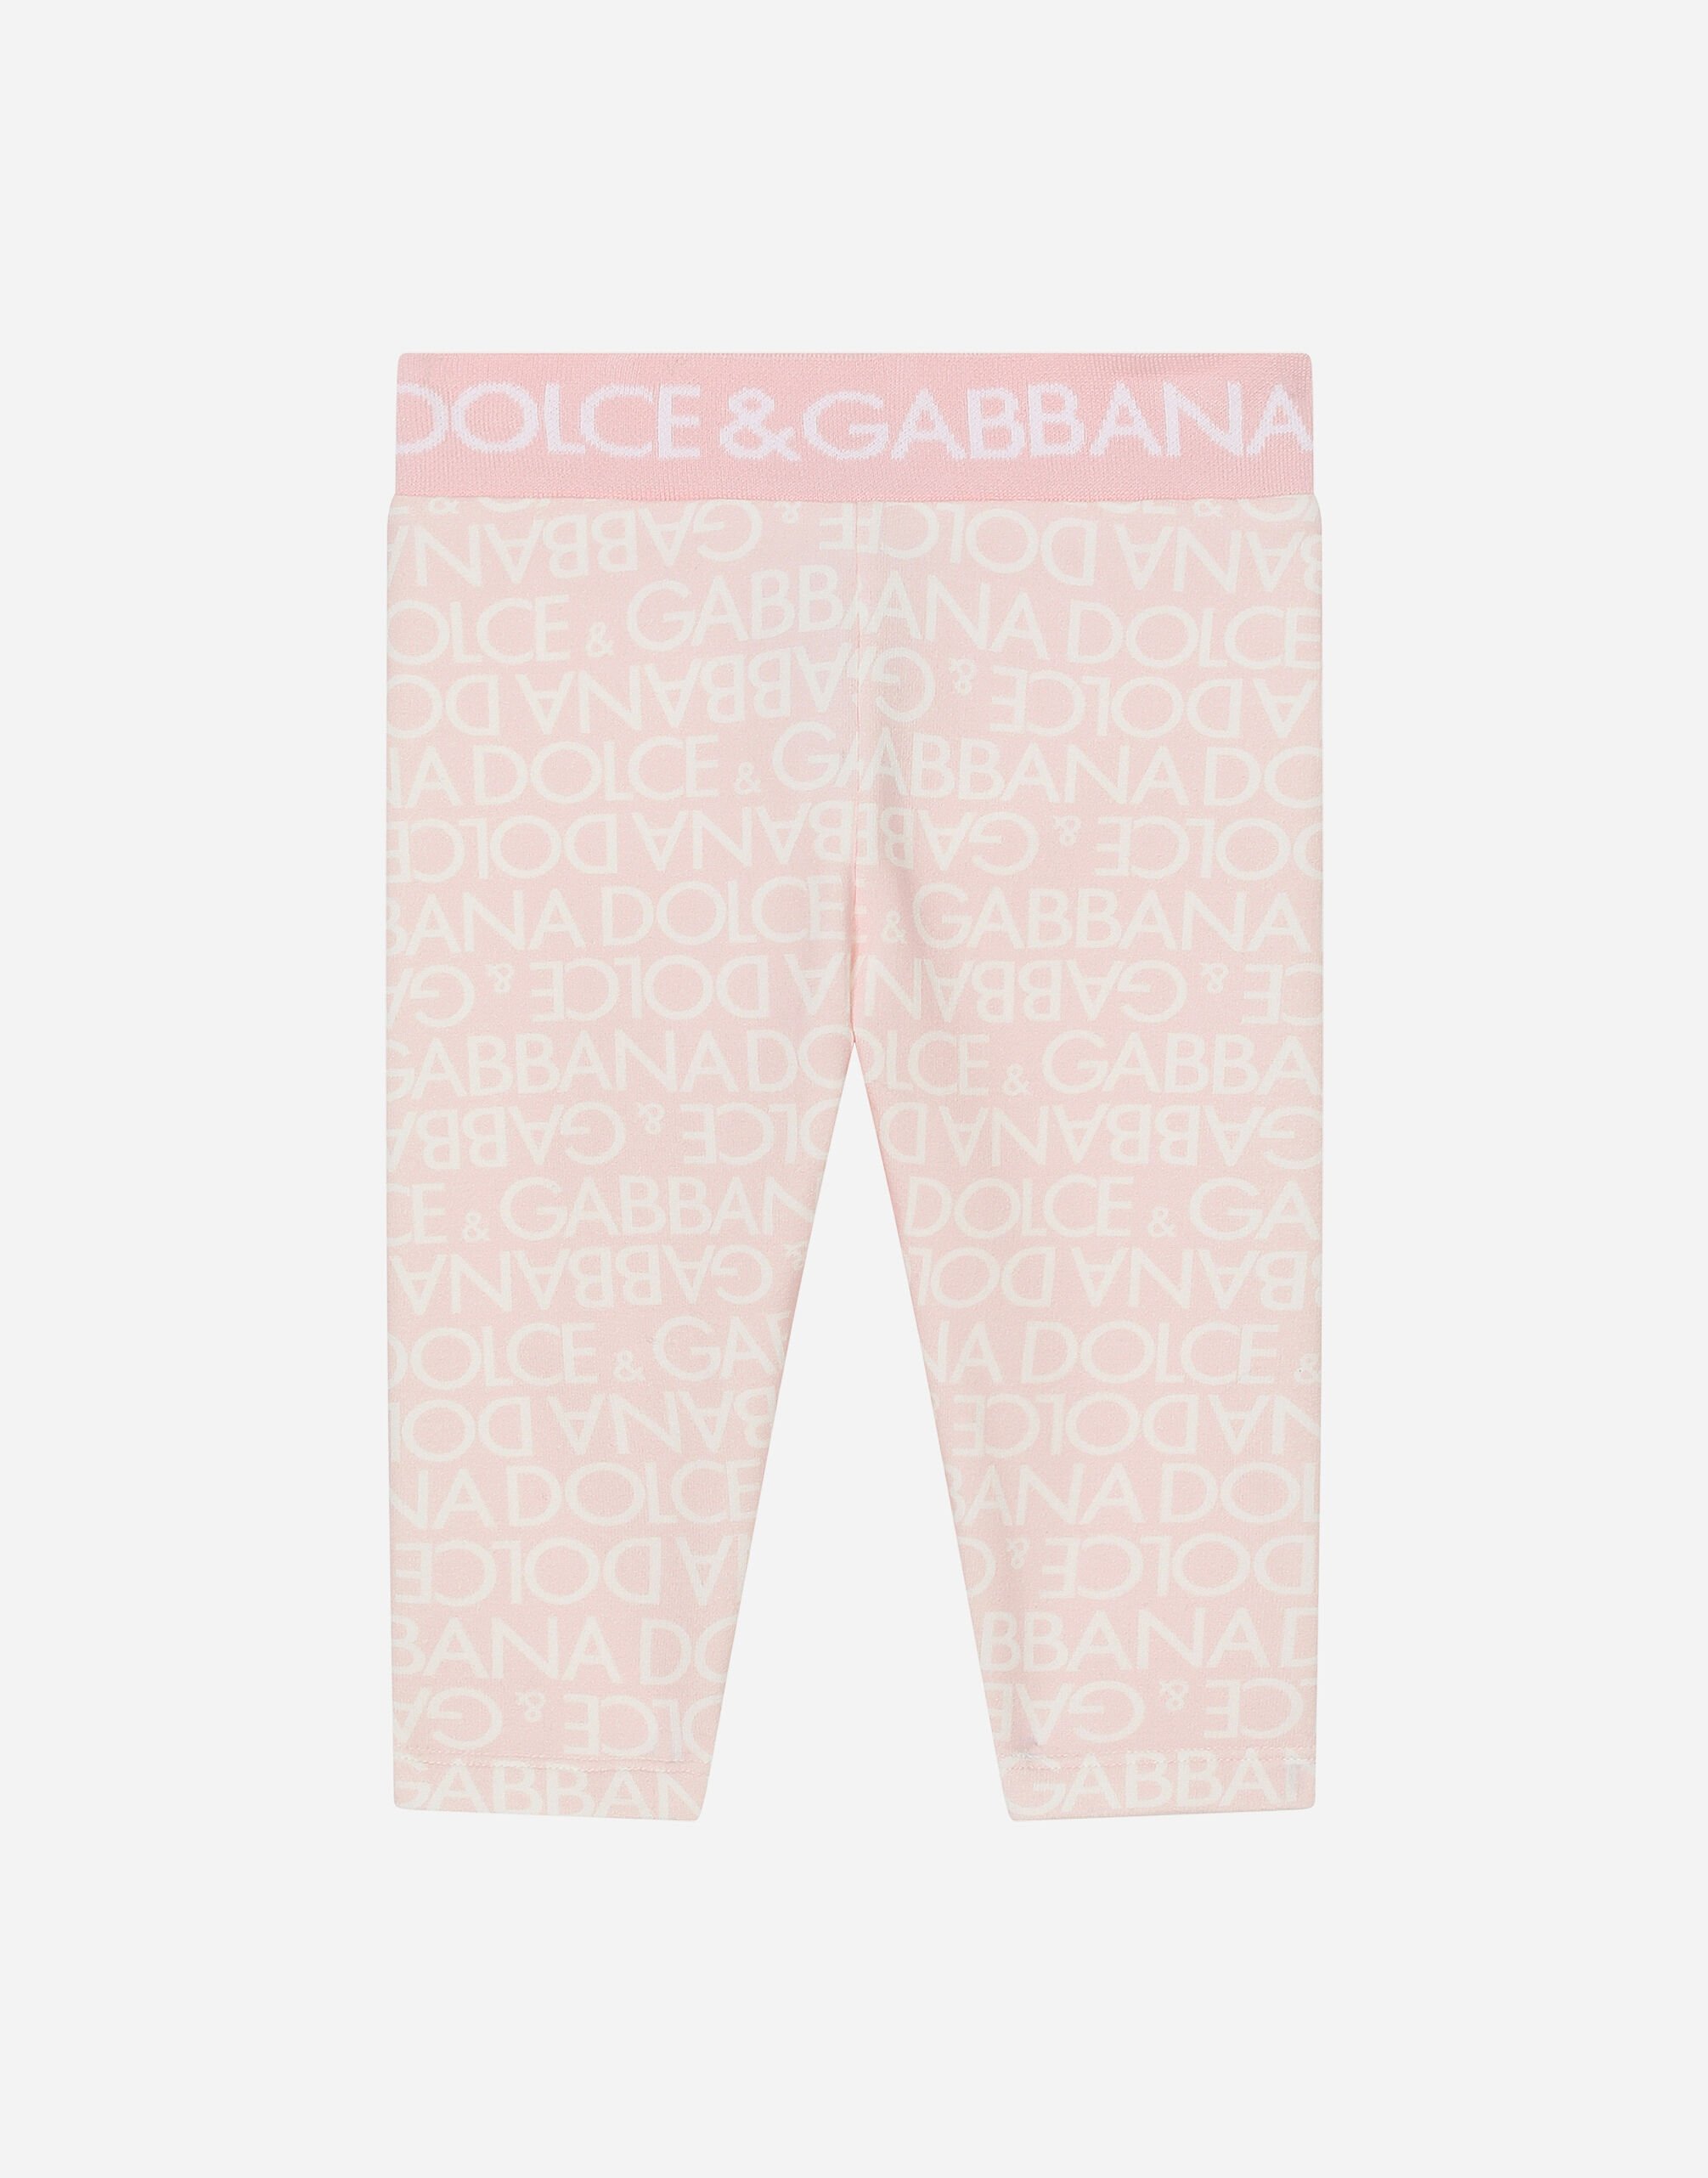 Dolce & Gabbana Leggings in interlock stampa Logomania Stampa L23Q30FI5JU